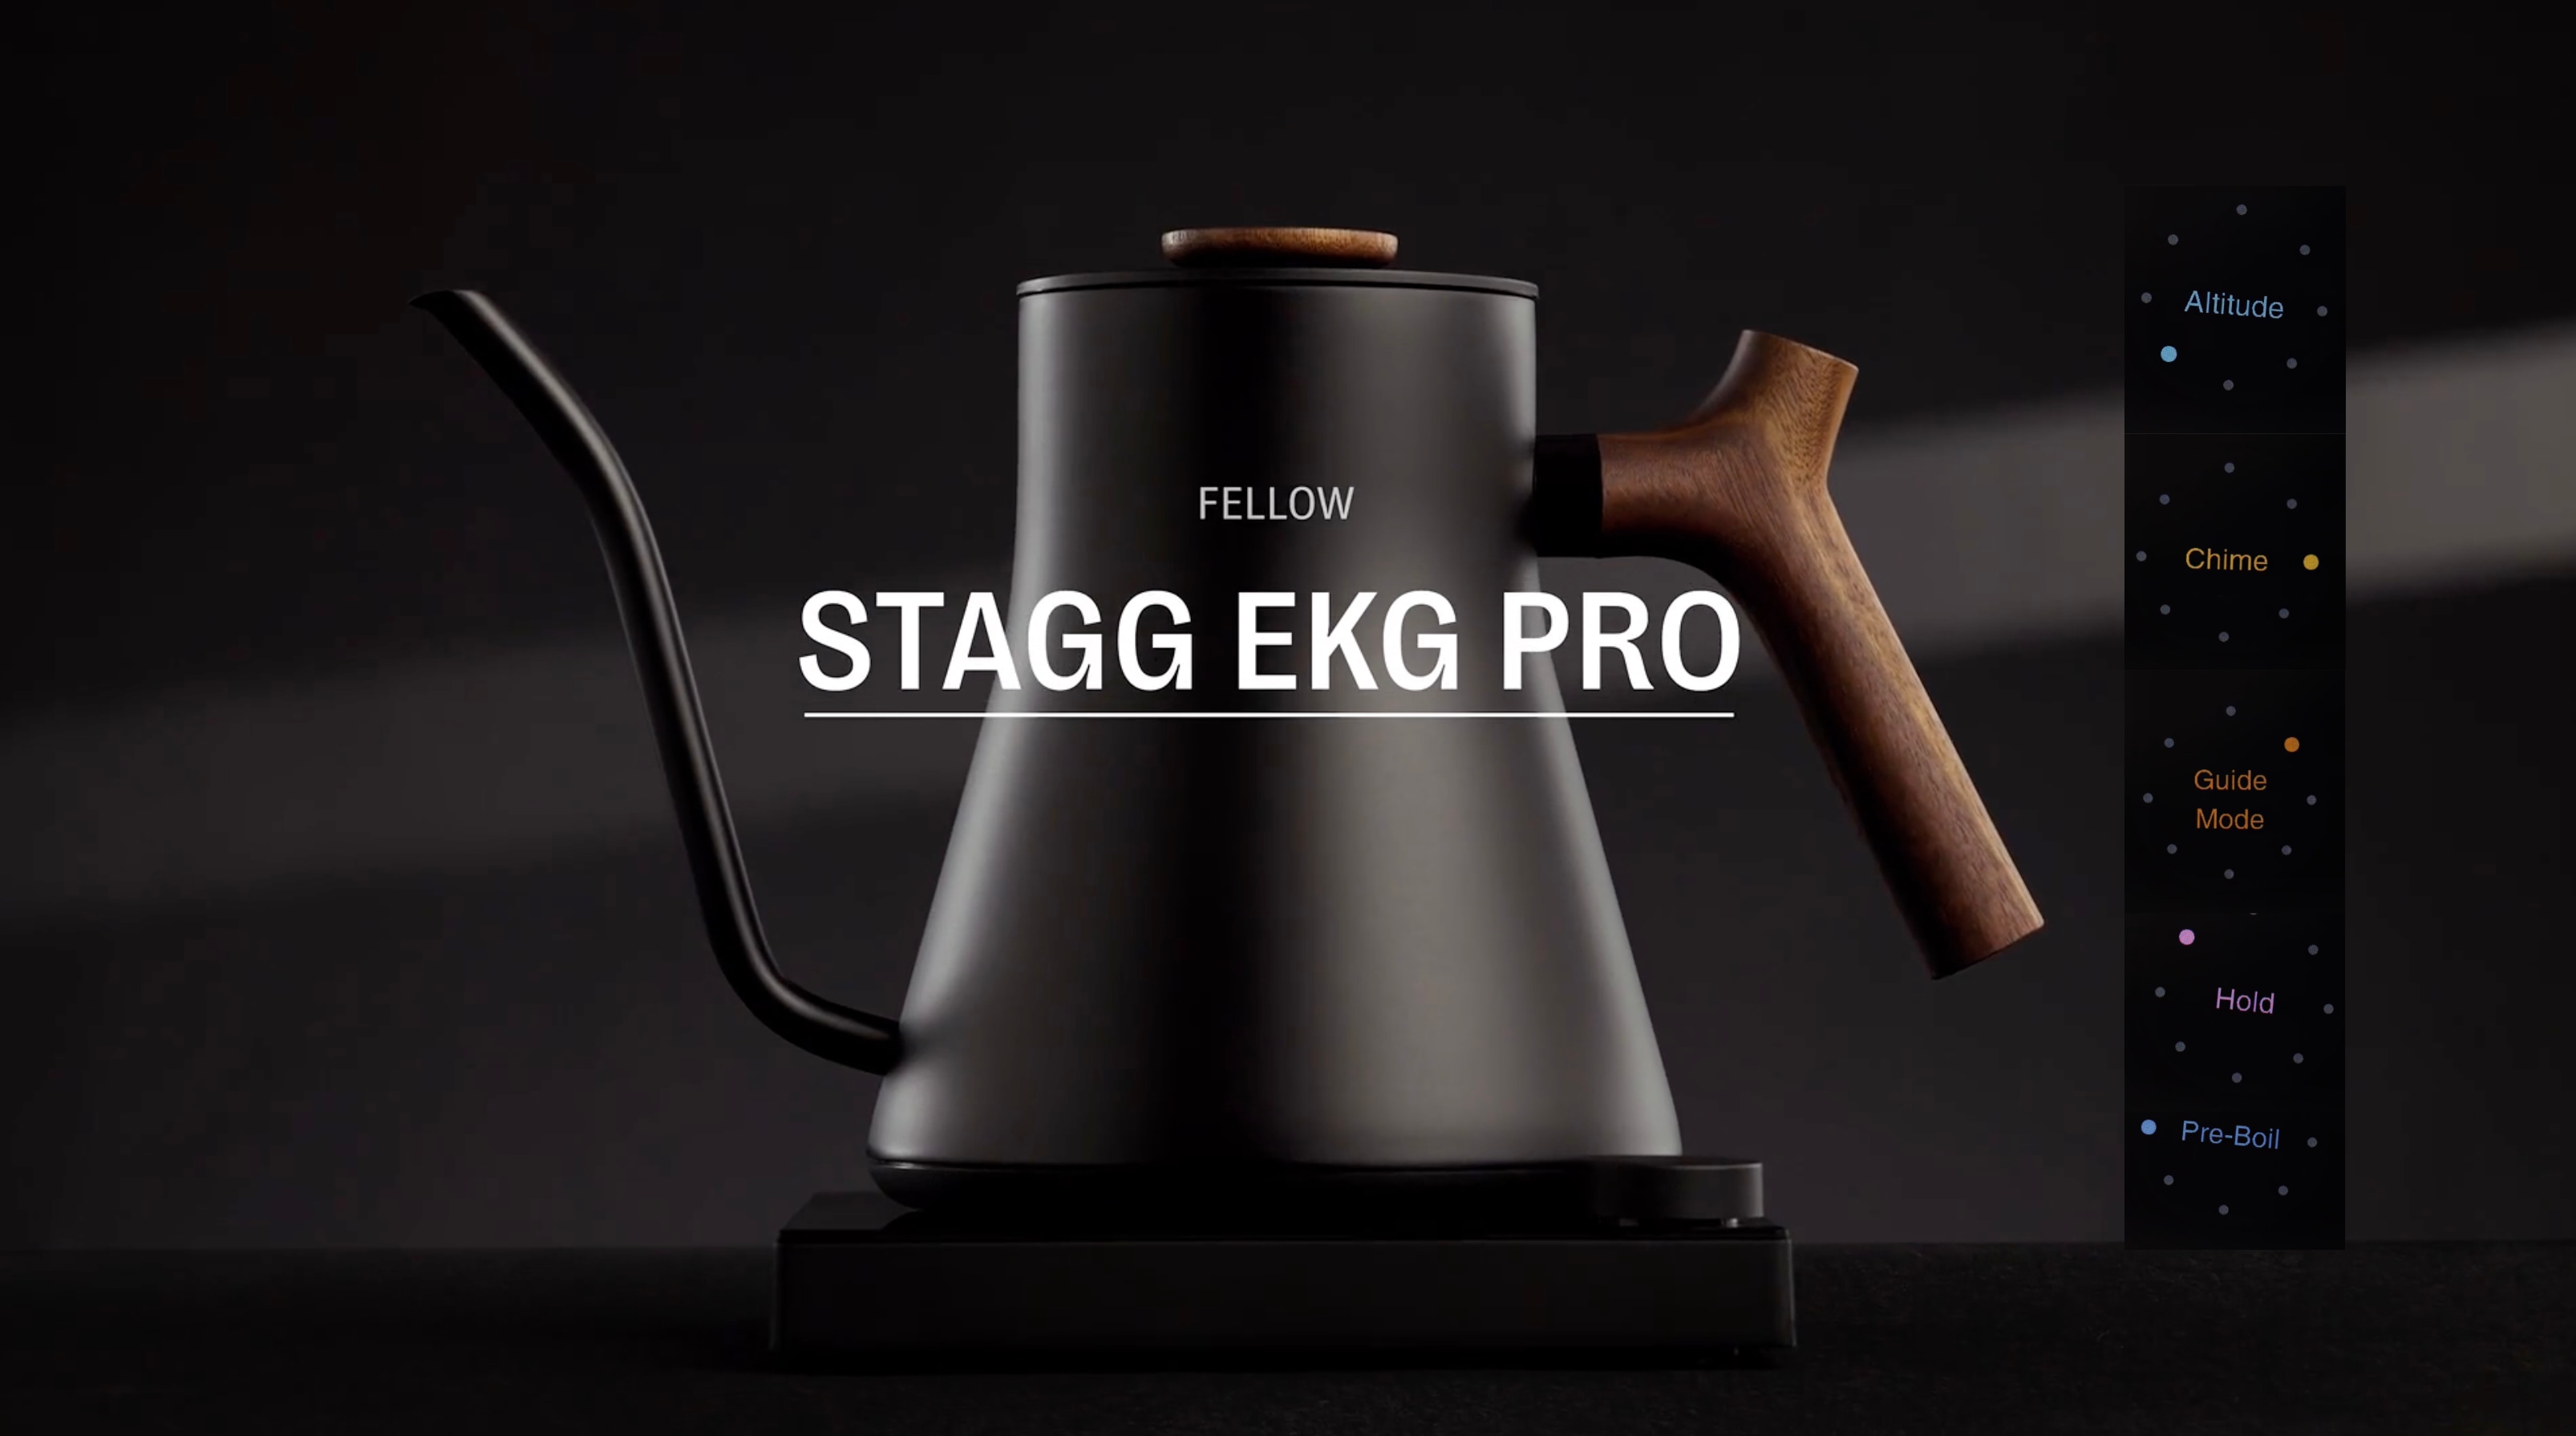 Ấm điện Fellow có phiên bản mới: Stagg Pro và Stagg Pro Studio